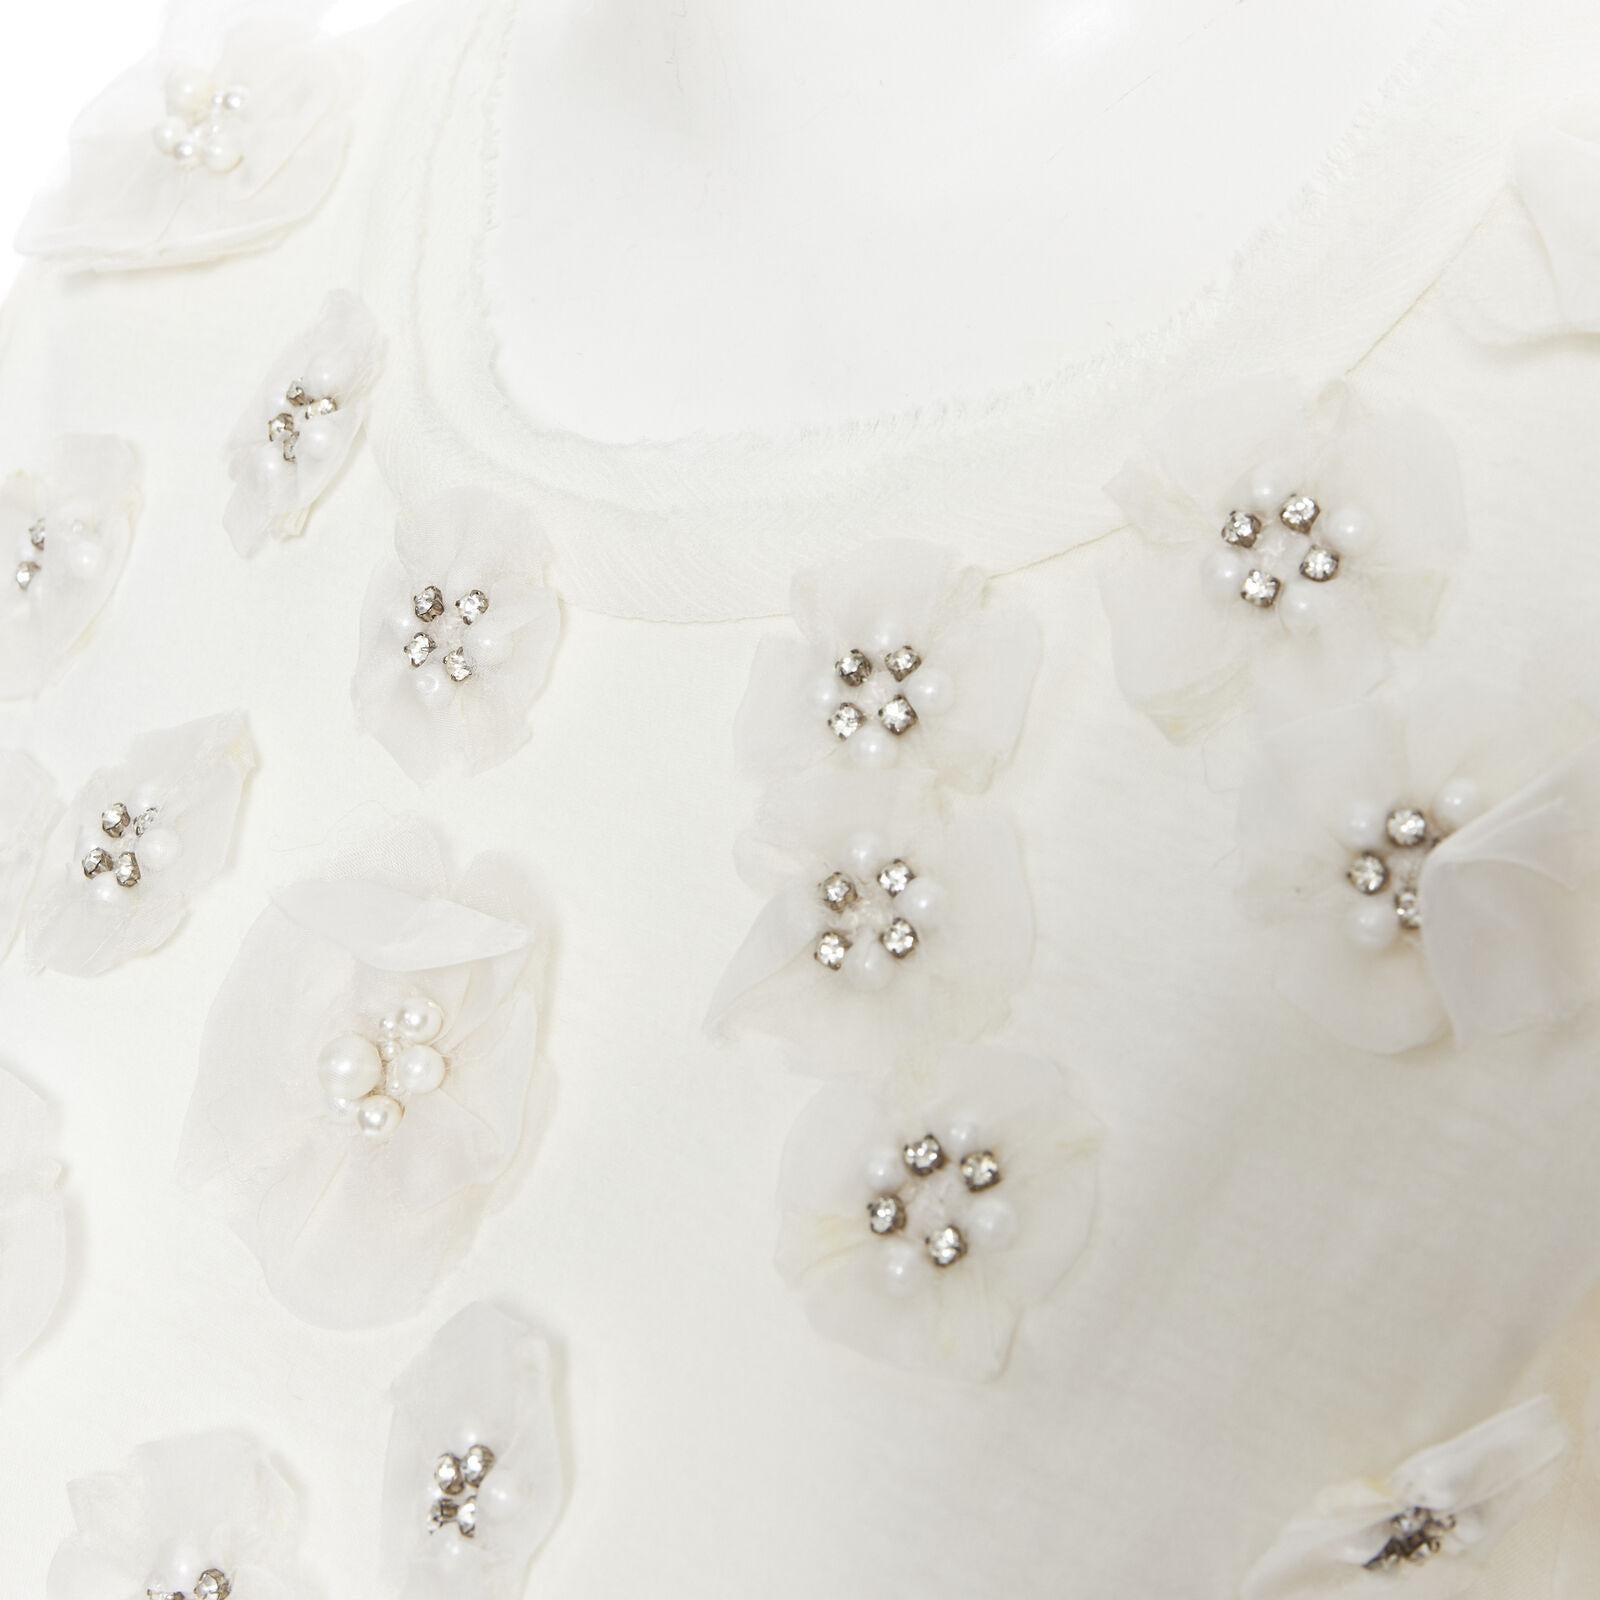 LANVIN Kollektion Blanche T-Shirt aus weißer Seide mit Perlen und Kristallverzierung XS
Referenz: SNKO/A00104
Marke: Lanvin
Designer: Alber Elbaz
Modell: Blumen-T-Shirt
Collection'S: Collection'S Blanche
MATERIAL: Baumwolle
Farbe: Weiß
Muster: